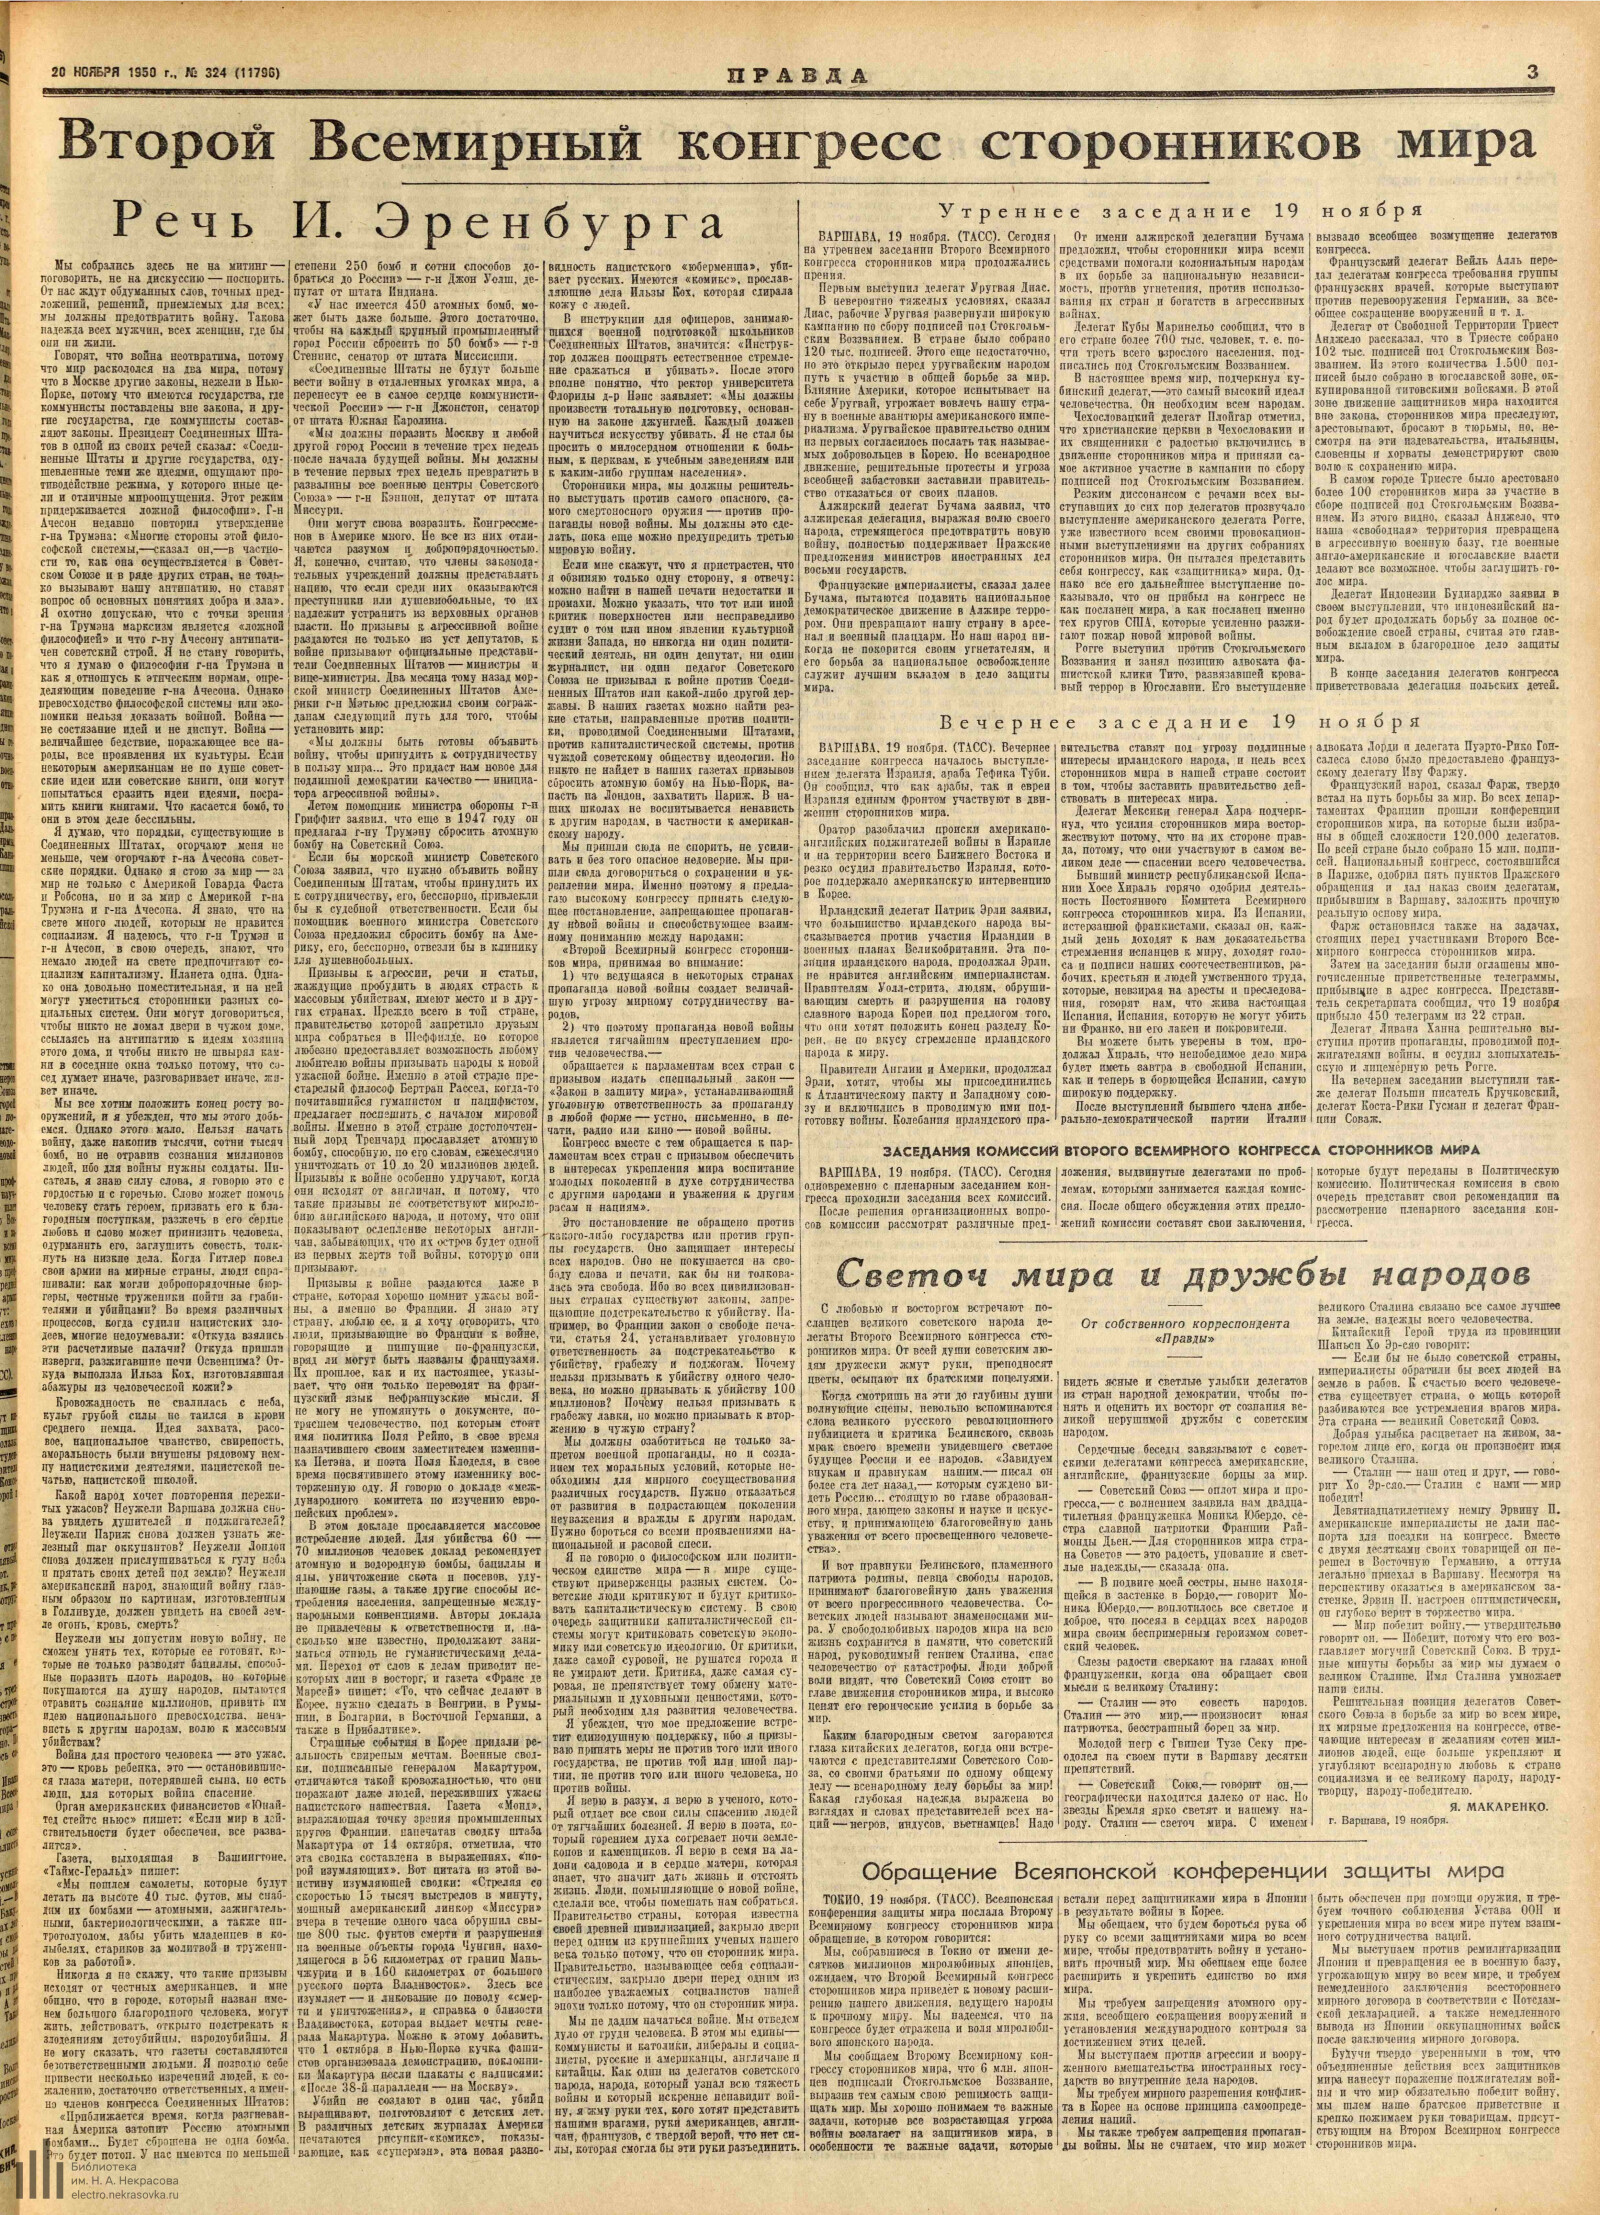 Правда, [газета], 1950, № 324 (11796), 20 ноября, с. 3.jpg